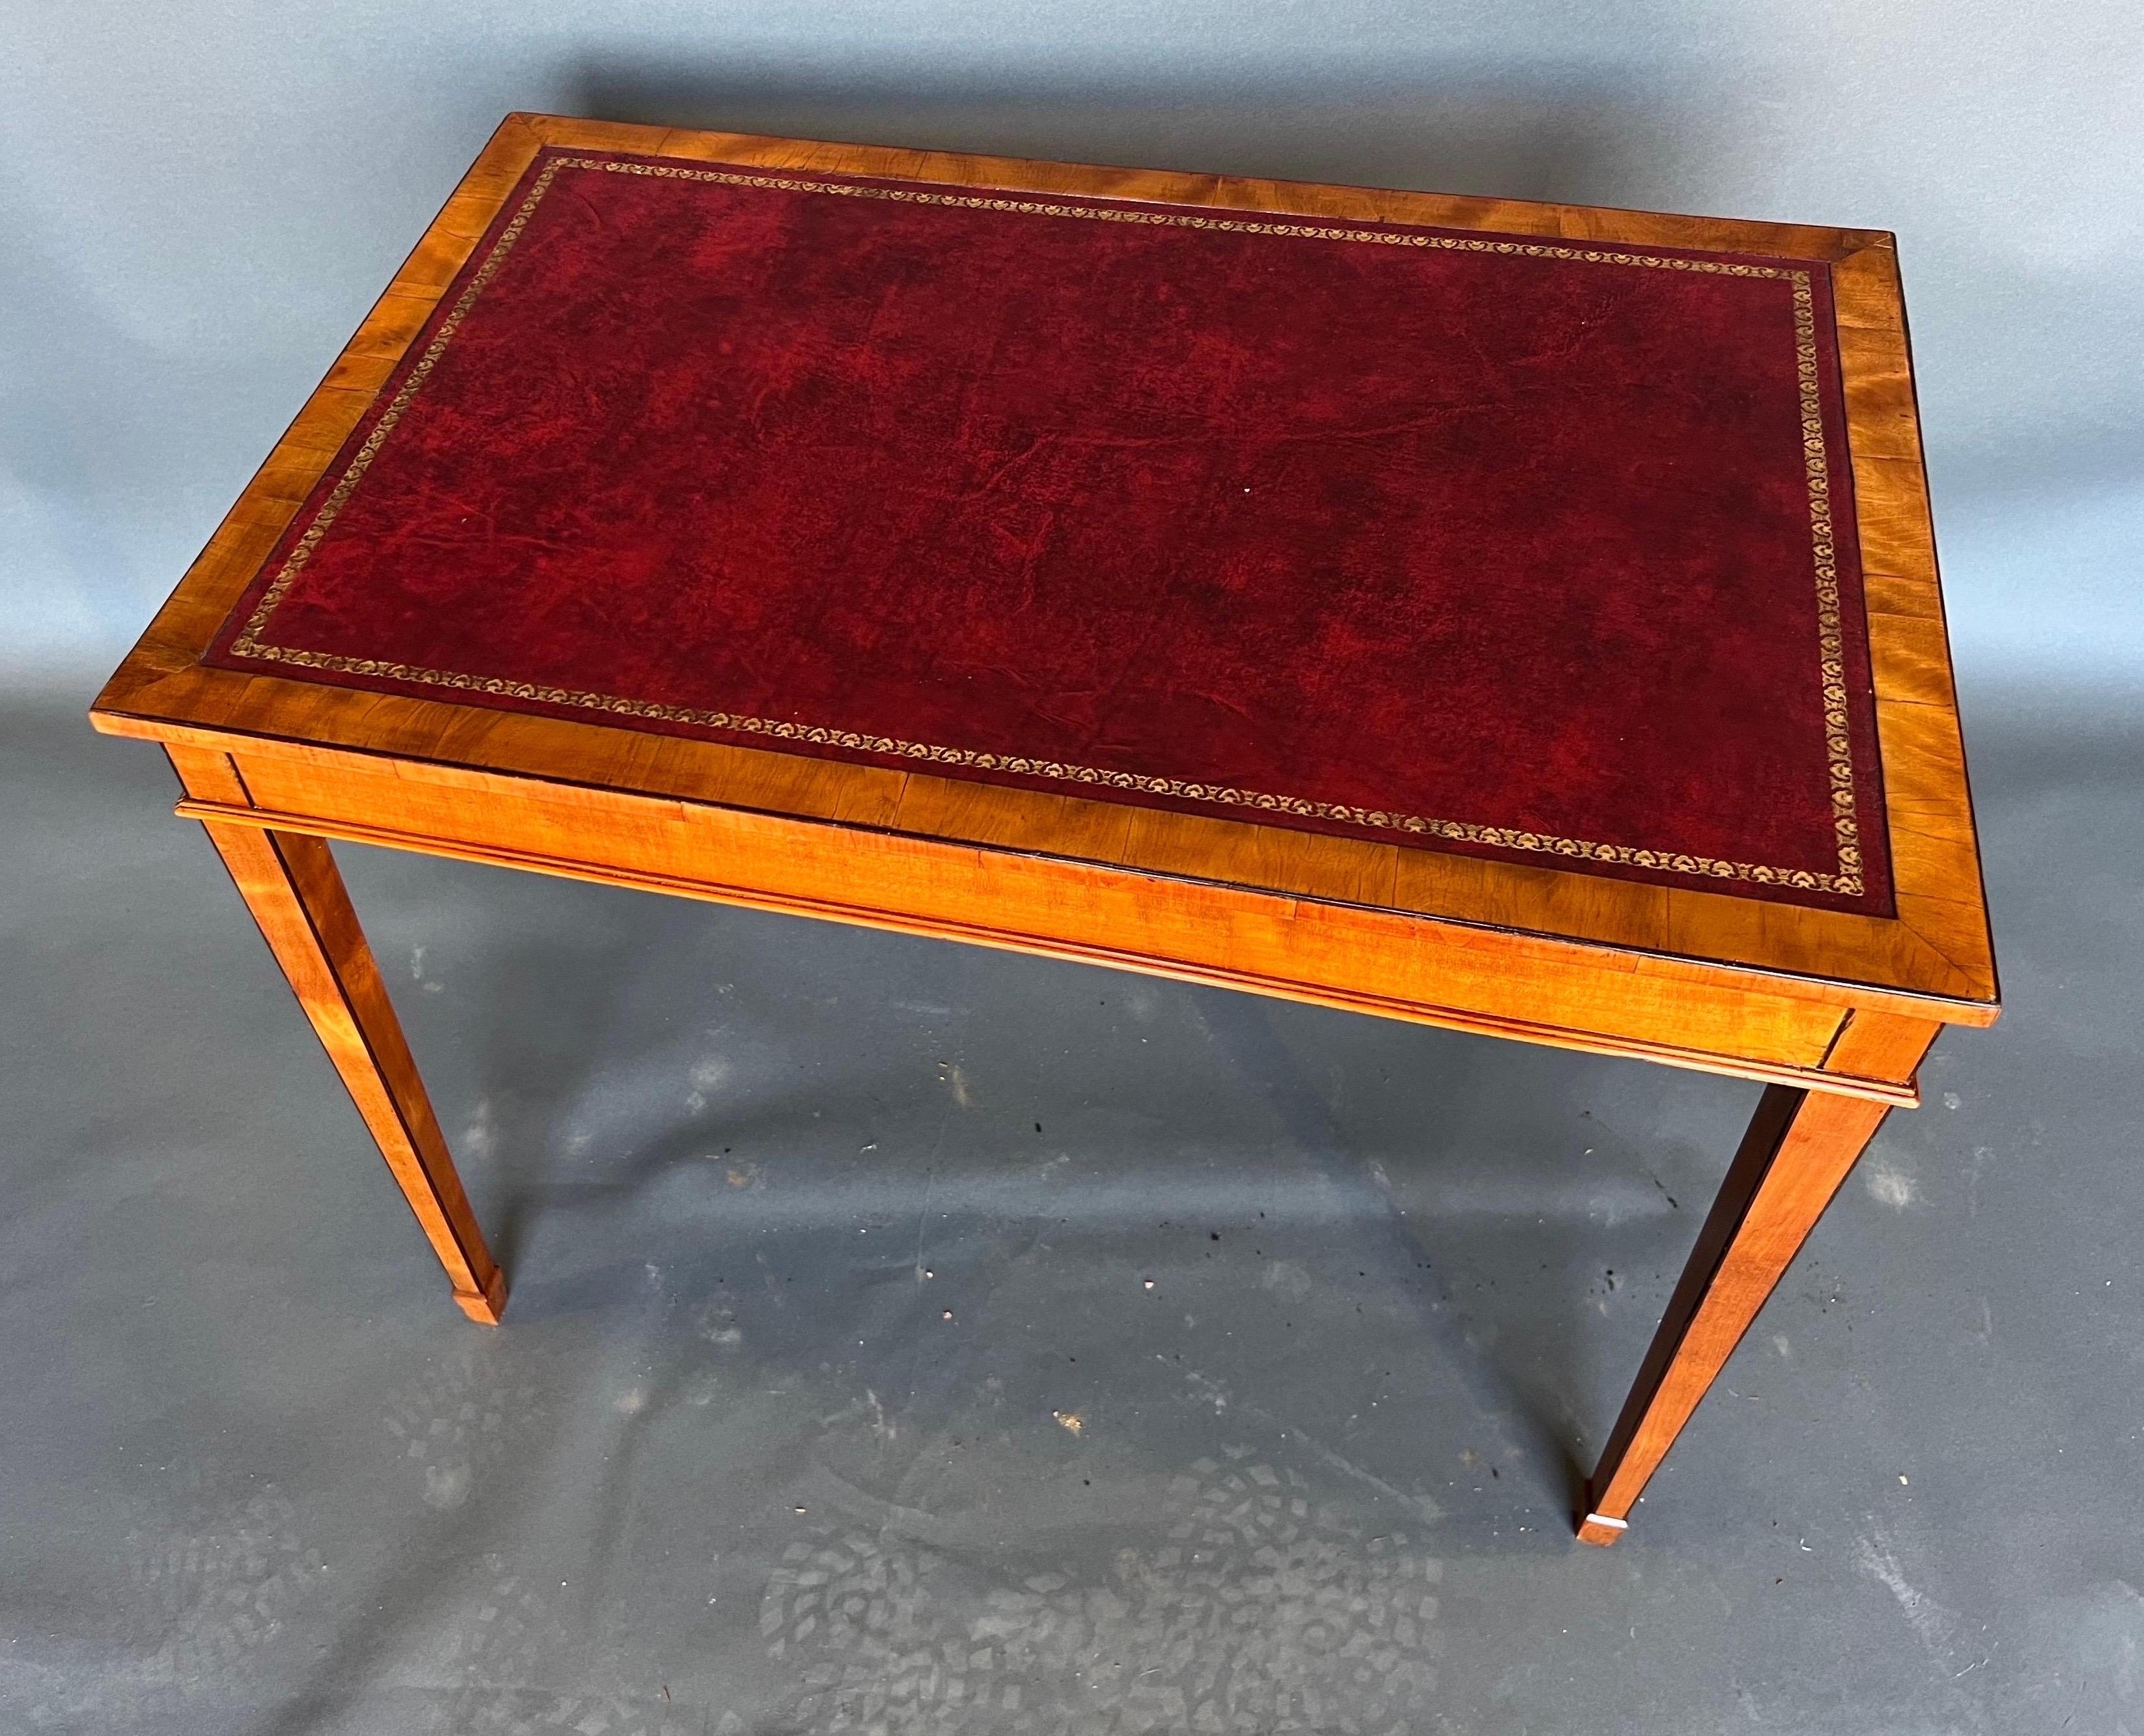 Table à plateau en bois de satin et cuir, d'époque édouardienne, du 19e siècle. La couleur est très jolie et la petite échelle en fait une option beaucoup plus polyvalente comme table d'appoint ou console.